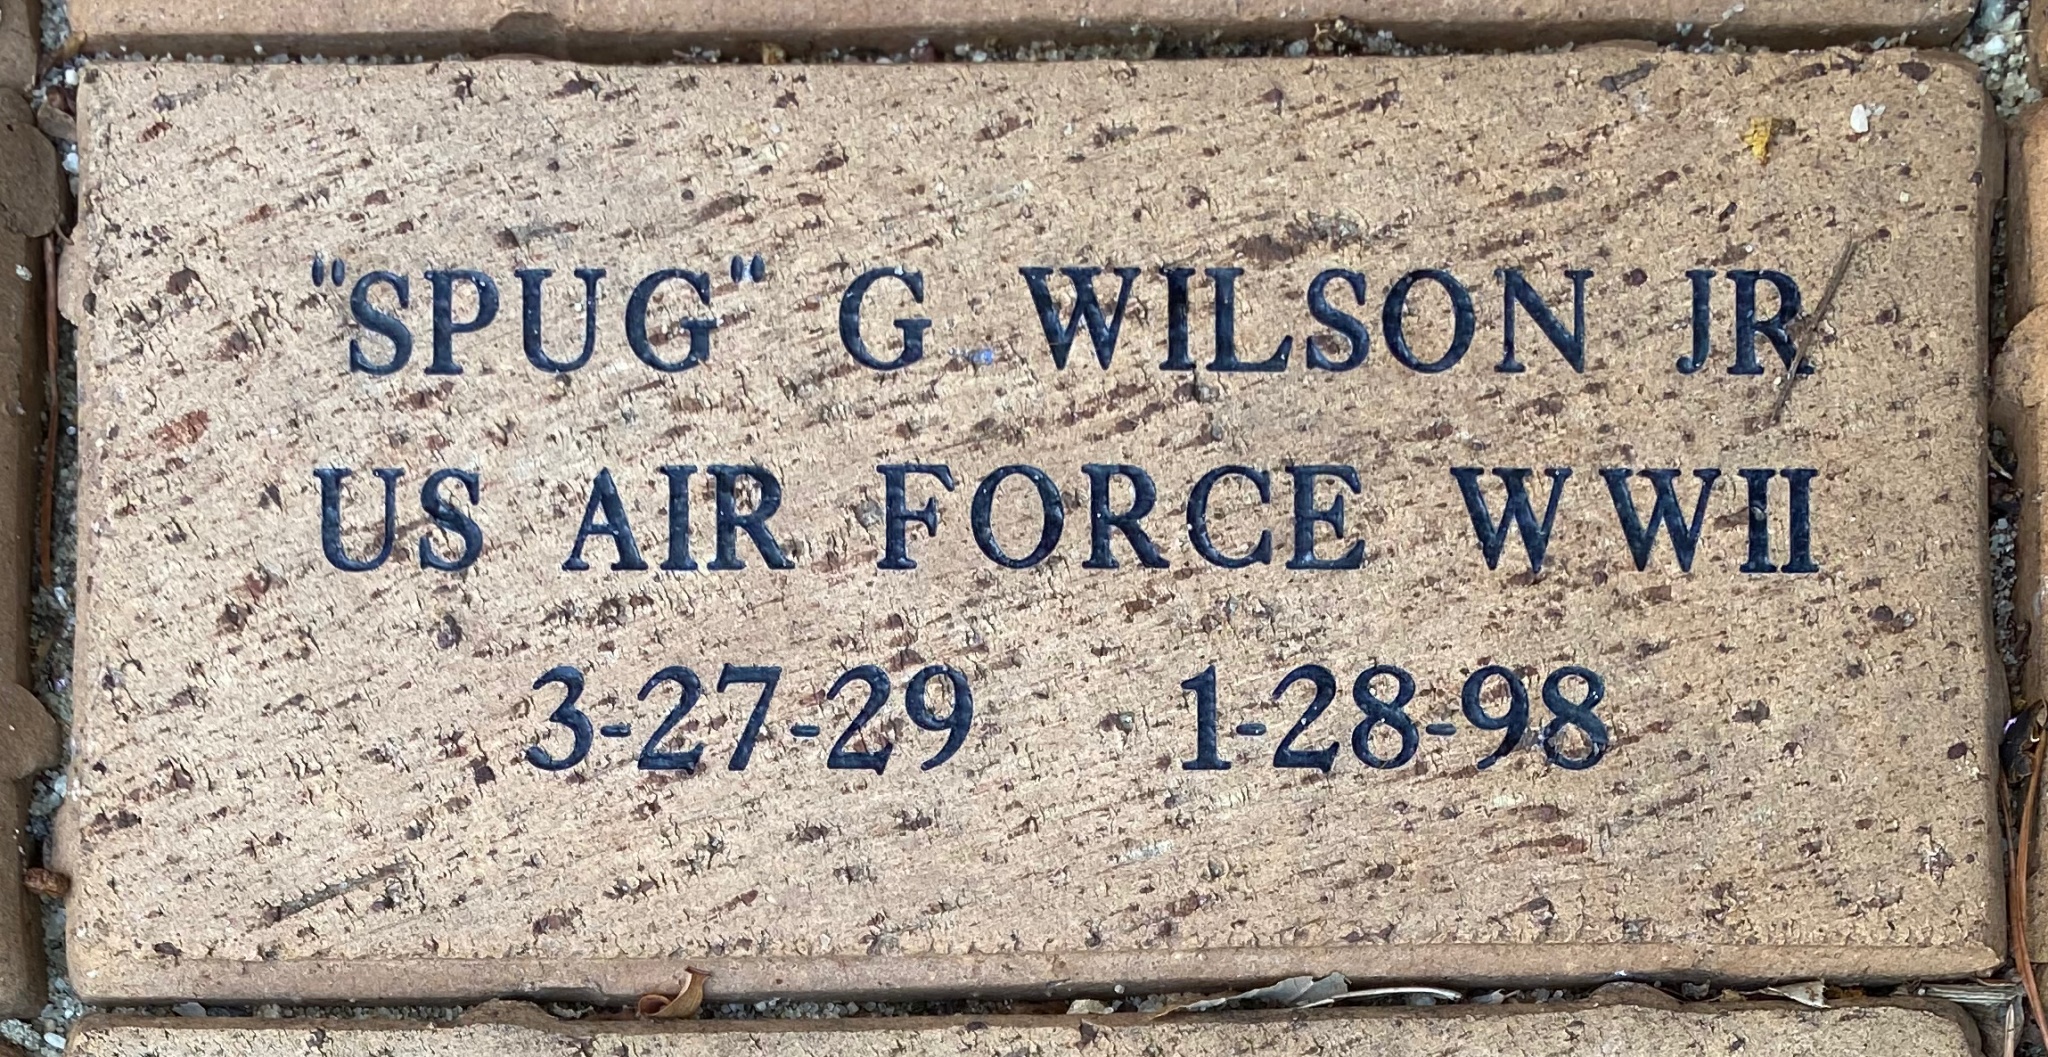 “SPUG” G WILSON JR US AIR FORCE WWII 3-27-29  1-28-98